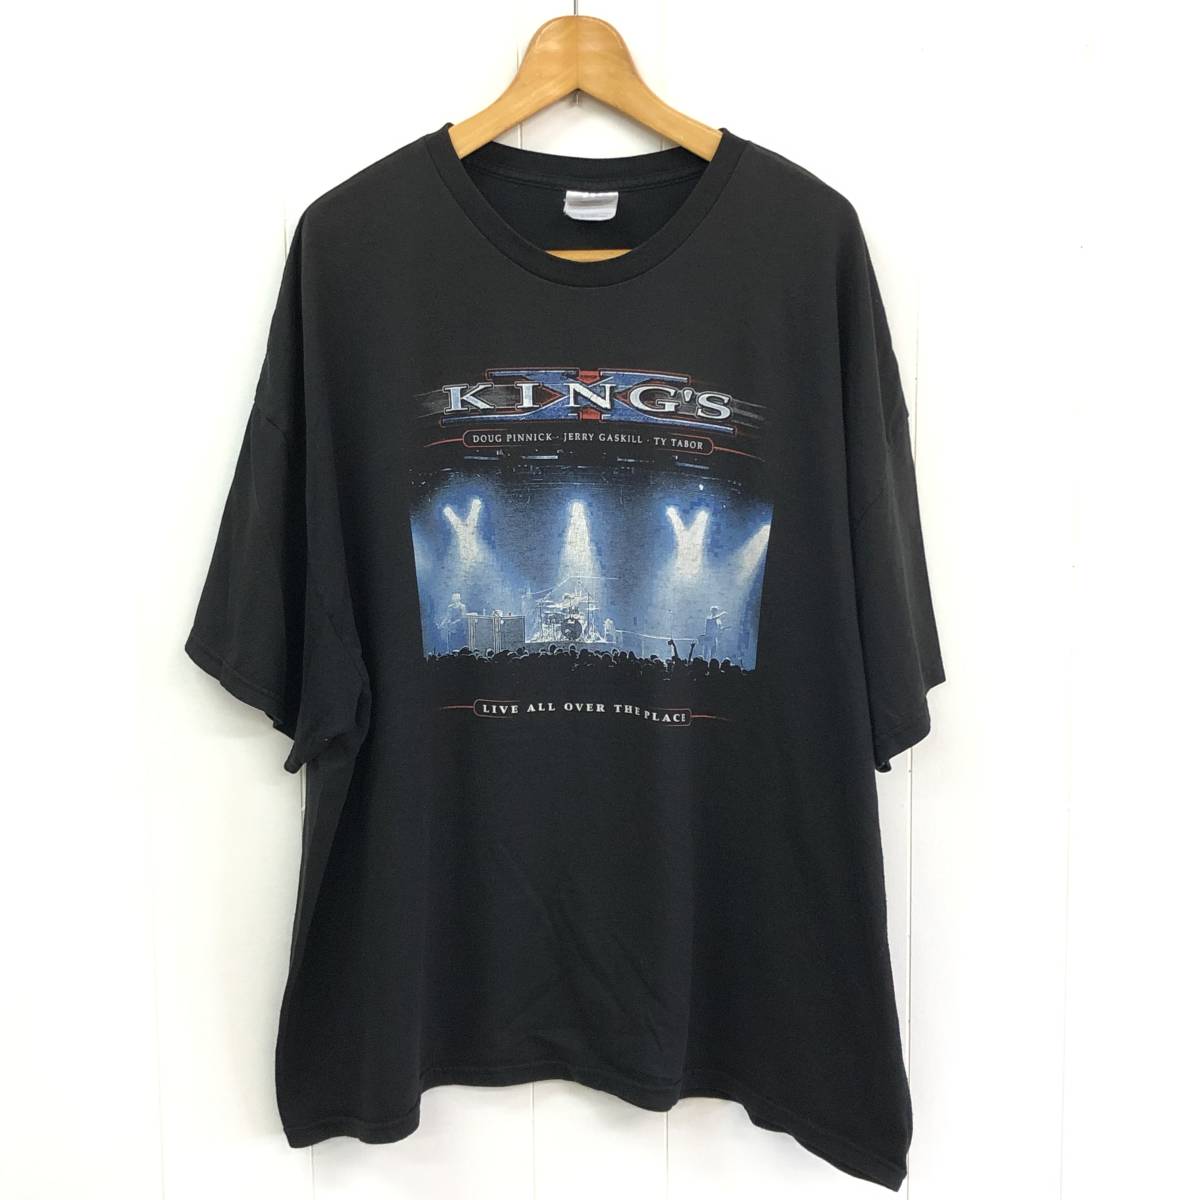 １着でも送料無料 安値 KING'S ツアーTシャツ ブラック 3XL 2004 キングス バンドTシャツ ミュージック ロックTシャツ hydroflasksverige.se hydroflasksverige.se